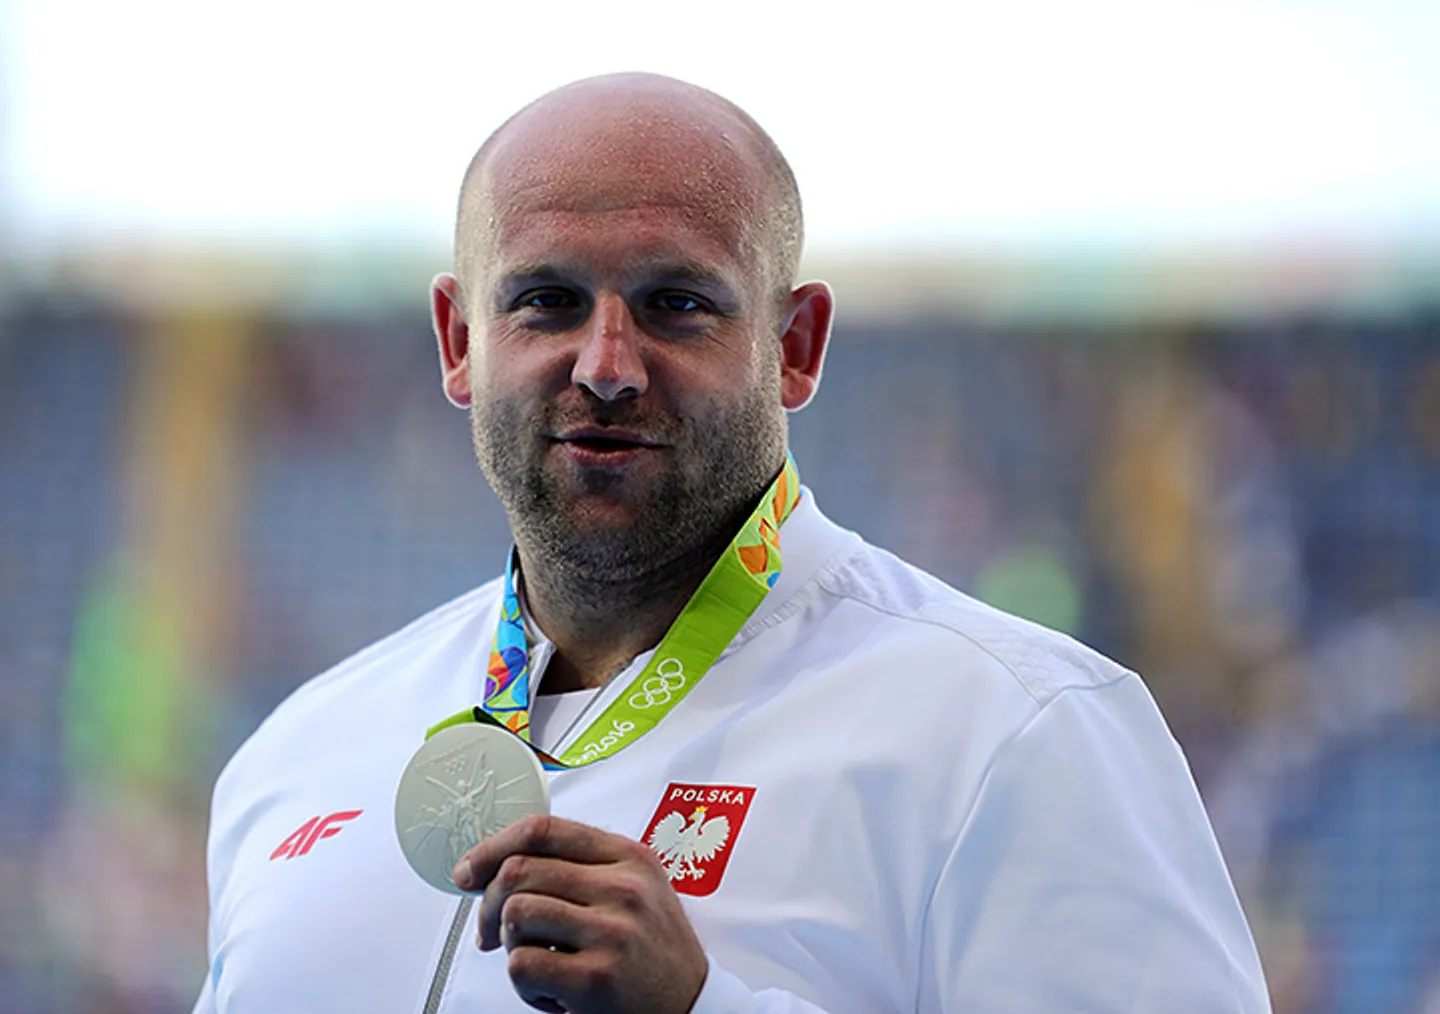 Польский атлет продает медаль ради спасения ребенка